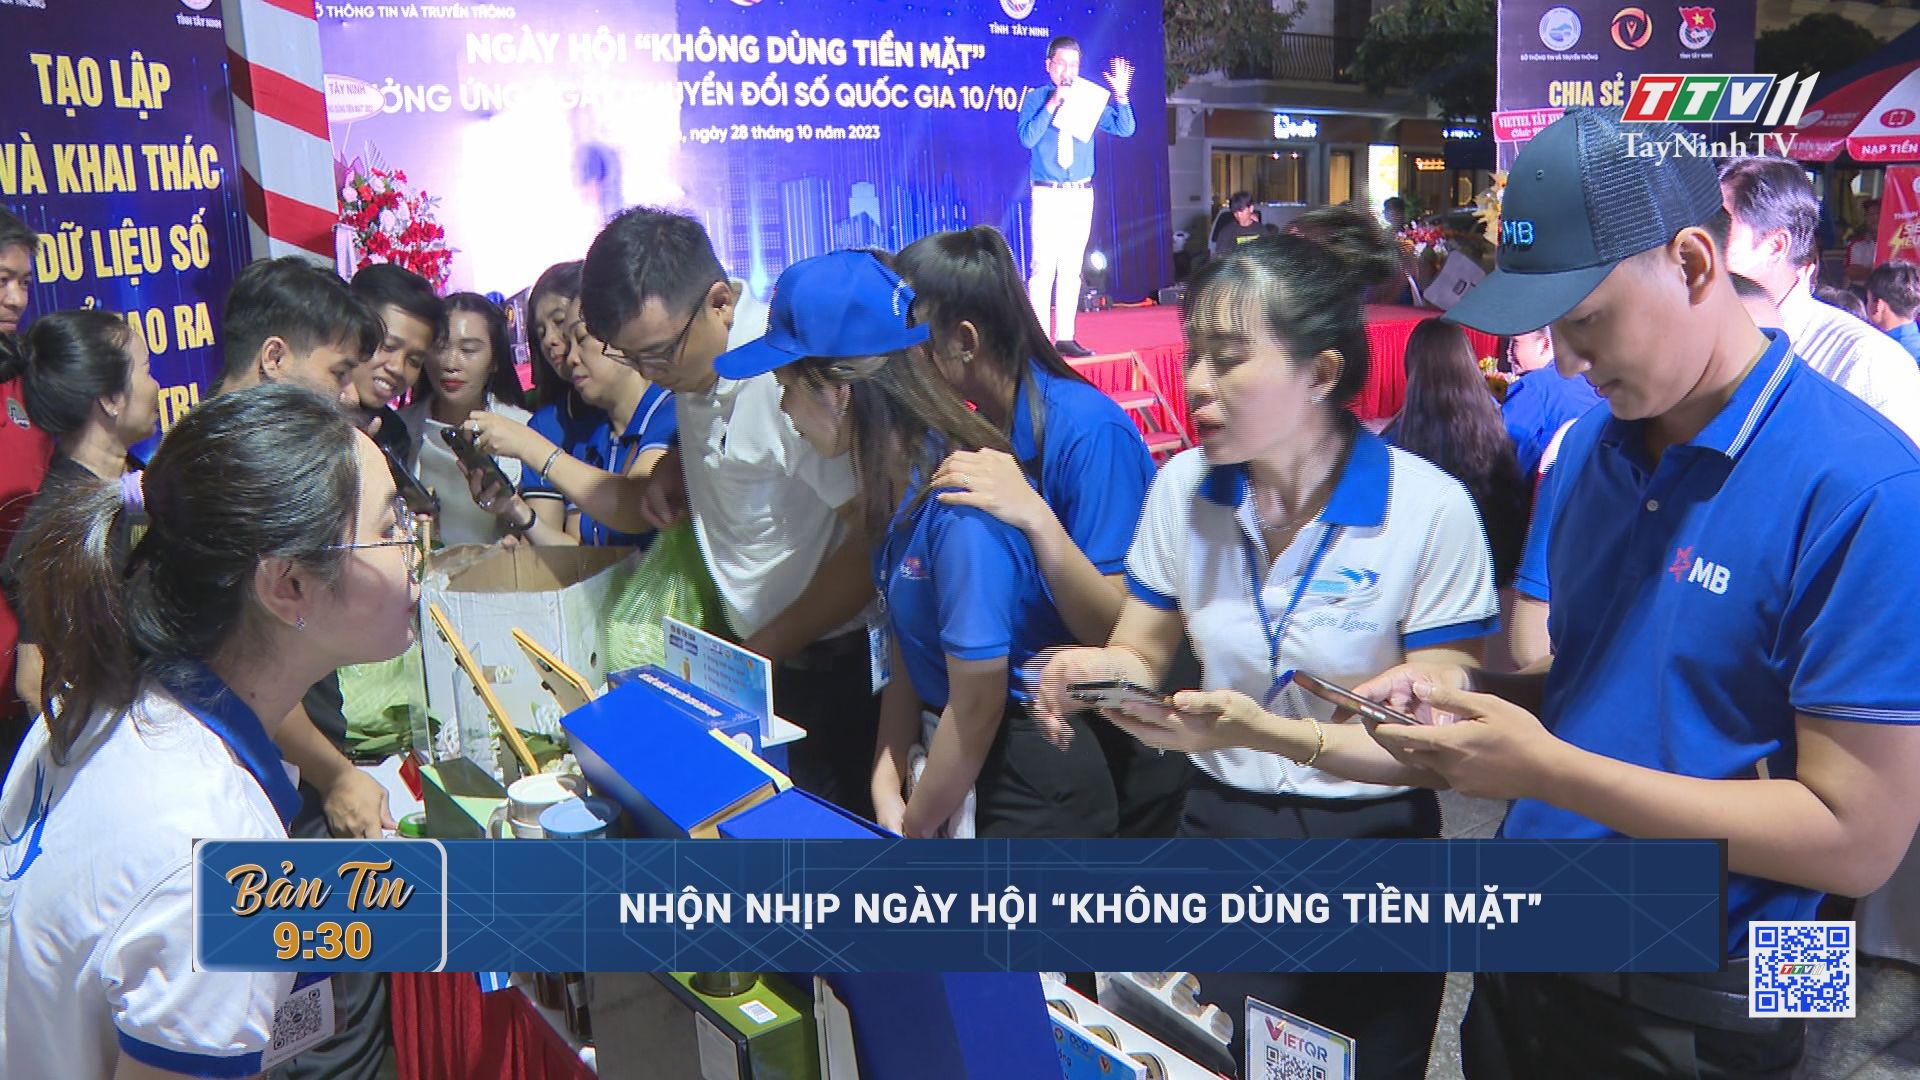 Nhộn nhịp ngày hội “Không dùng tiền mặt” | TayNinhTV